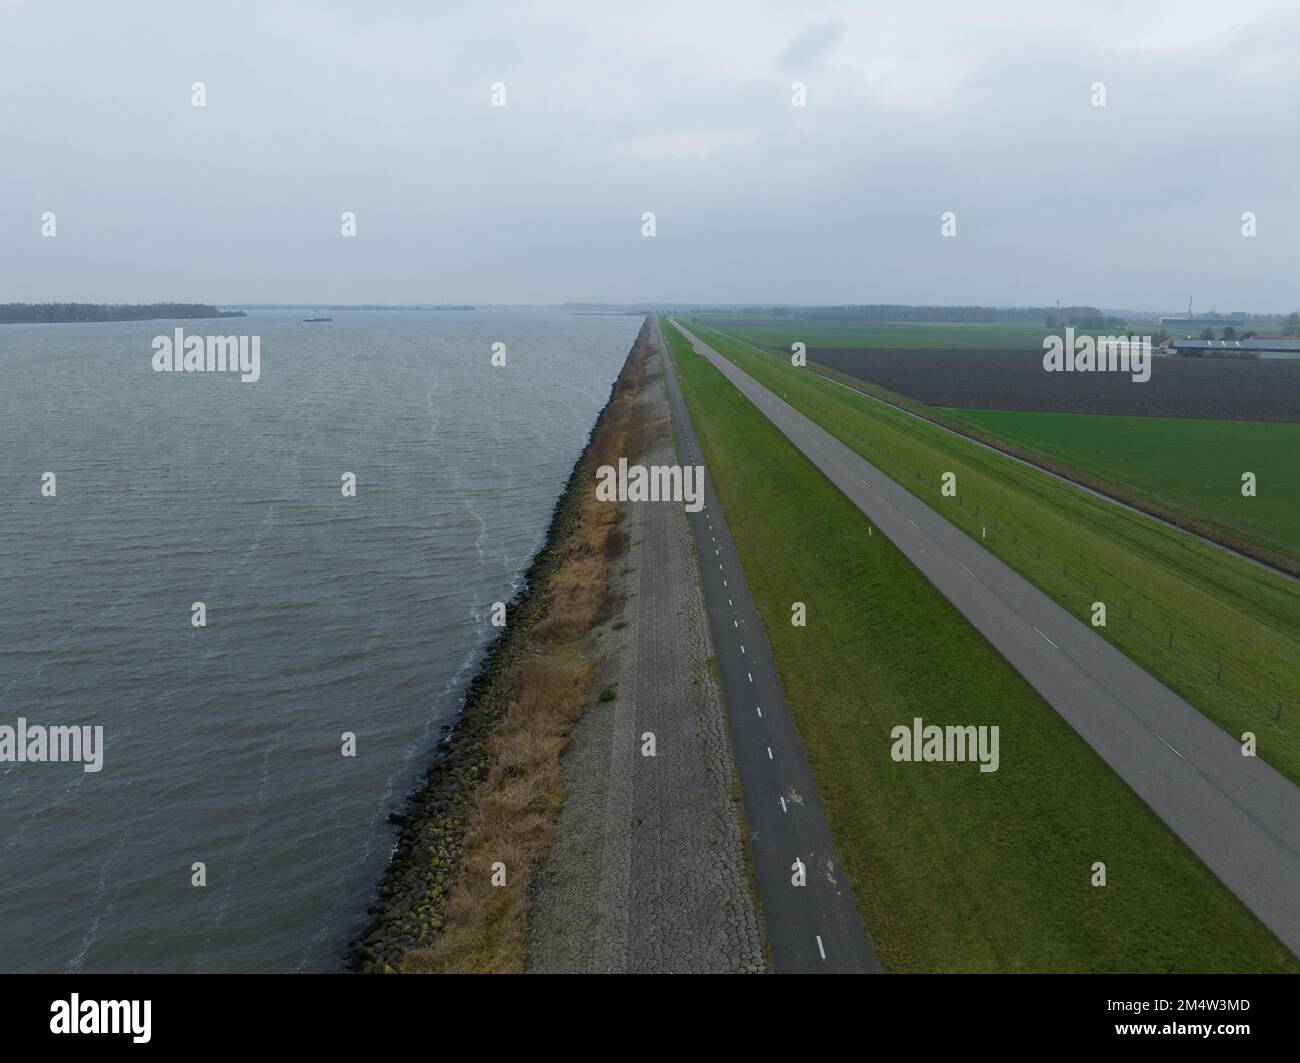 Infrastructure de la digue aux pays-Bas, aux pays-Bas. Barrière d'inondation le long de l'Ijselmeer près de Lelystad et Urk. Ligne côtière d'eau et de terre. Drone aérien Banque D'Images